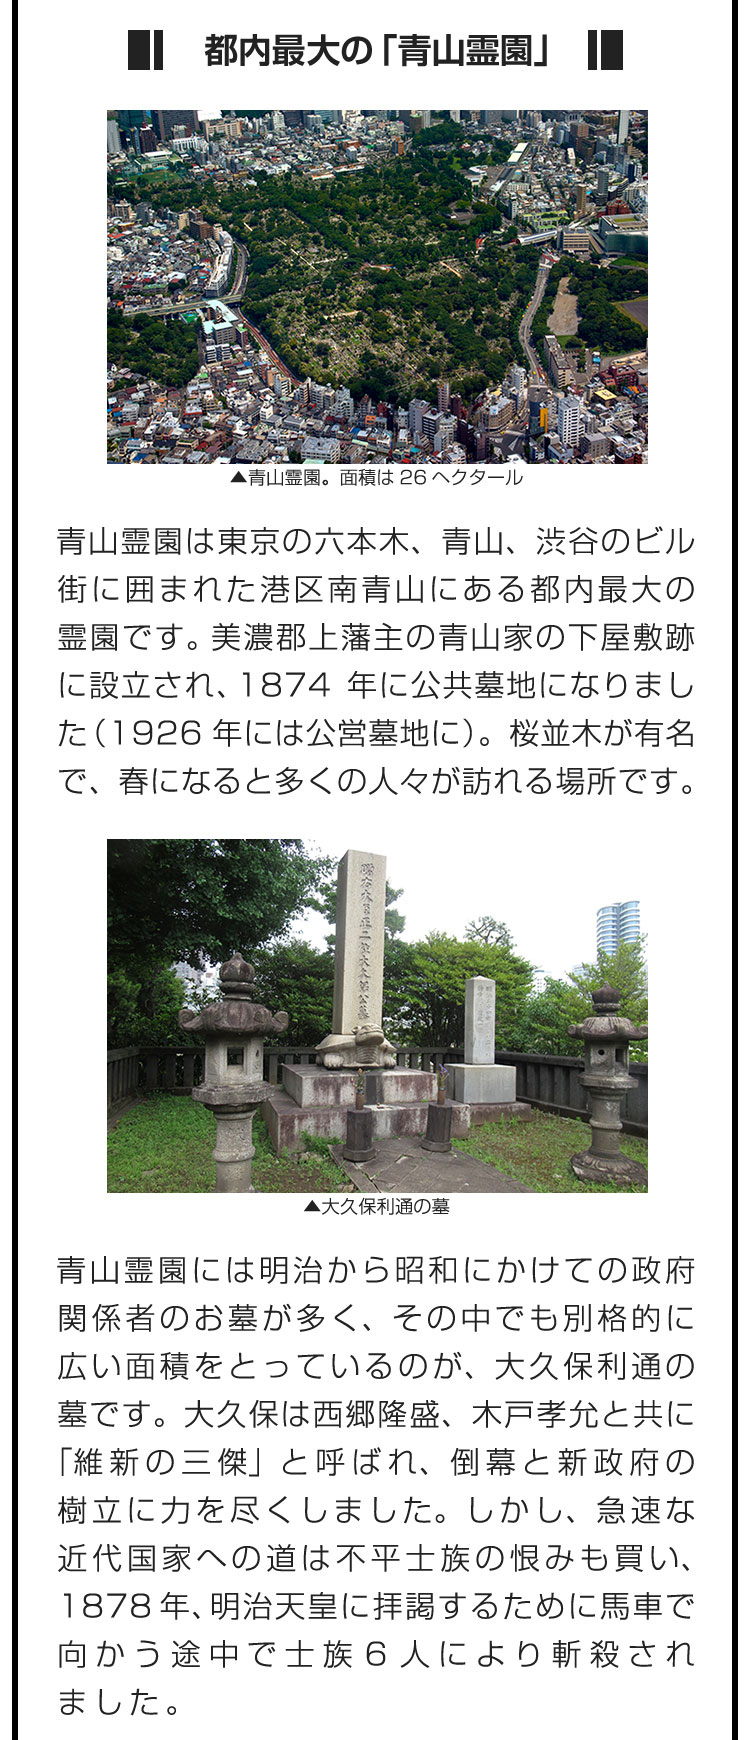 ■都内最大の「青山霊園」■青山霊園は東京の六本木、青山、渋谷のビル街に囲まれた港区南青山にある都内最大の霊園です。美濃郡上藩主の青山家の下屋敷跡に設立され、1874年に公共墓地になりました（1926年には公営墓地に）。桜並木が有名で、春になると多くの人々が訪れる場所です。　青山霊園には明治から昭和にかけての政府関係者のお墓が多く、その中でも別格的に広い面積をとっているのが、大久保利通の墓です。大久保は西郷隆盛、木戸孝允と共に「維新の三傑」と呼ばれ、倒幕と新政府の樹立に力を尽くしました。しかし、急速な近代国家への道は不平士族の恨みも買い、1878年、明治天皇に拝謁するために馬車で向かう途中で士族6人により斬殺されました。